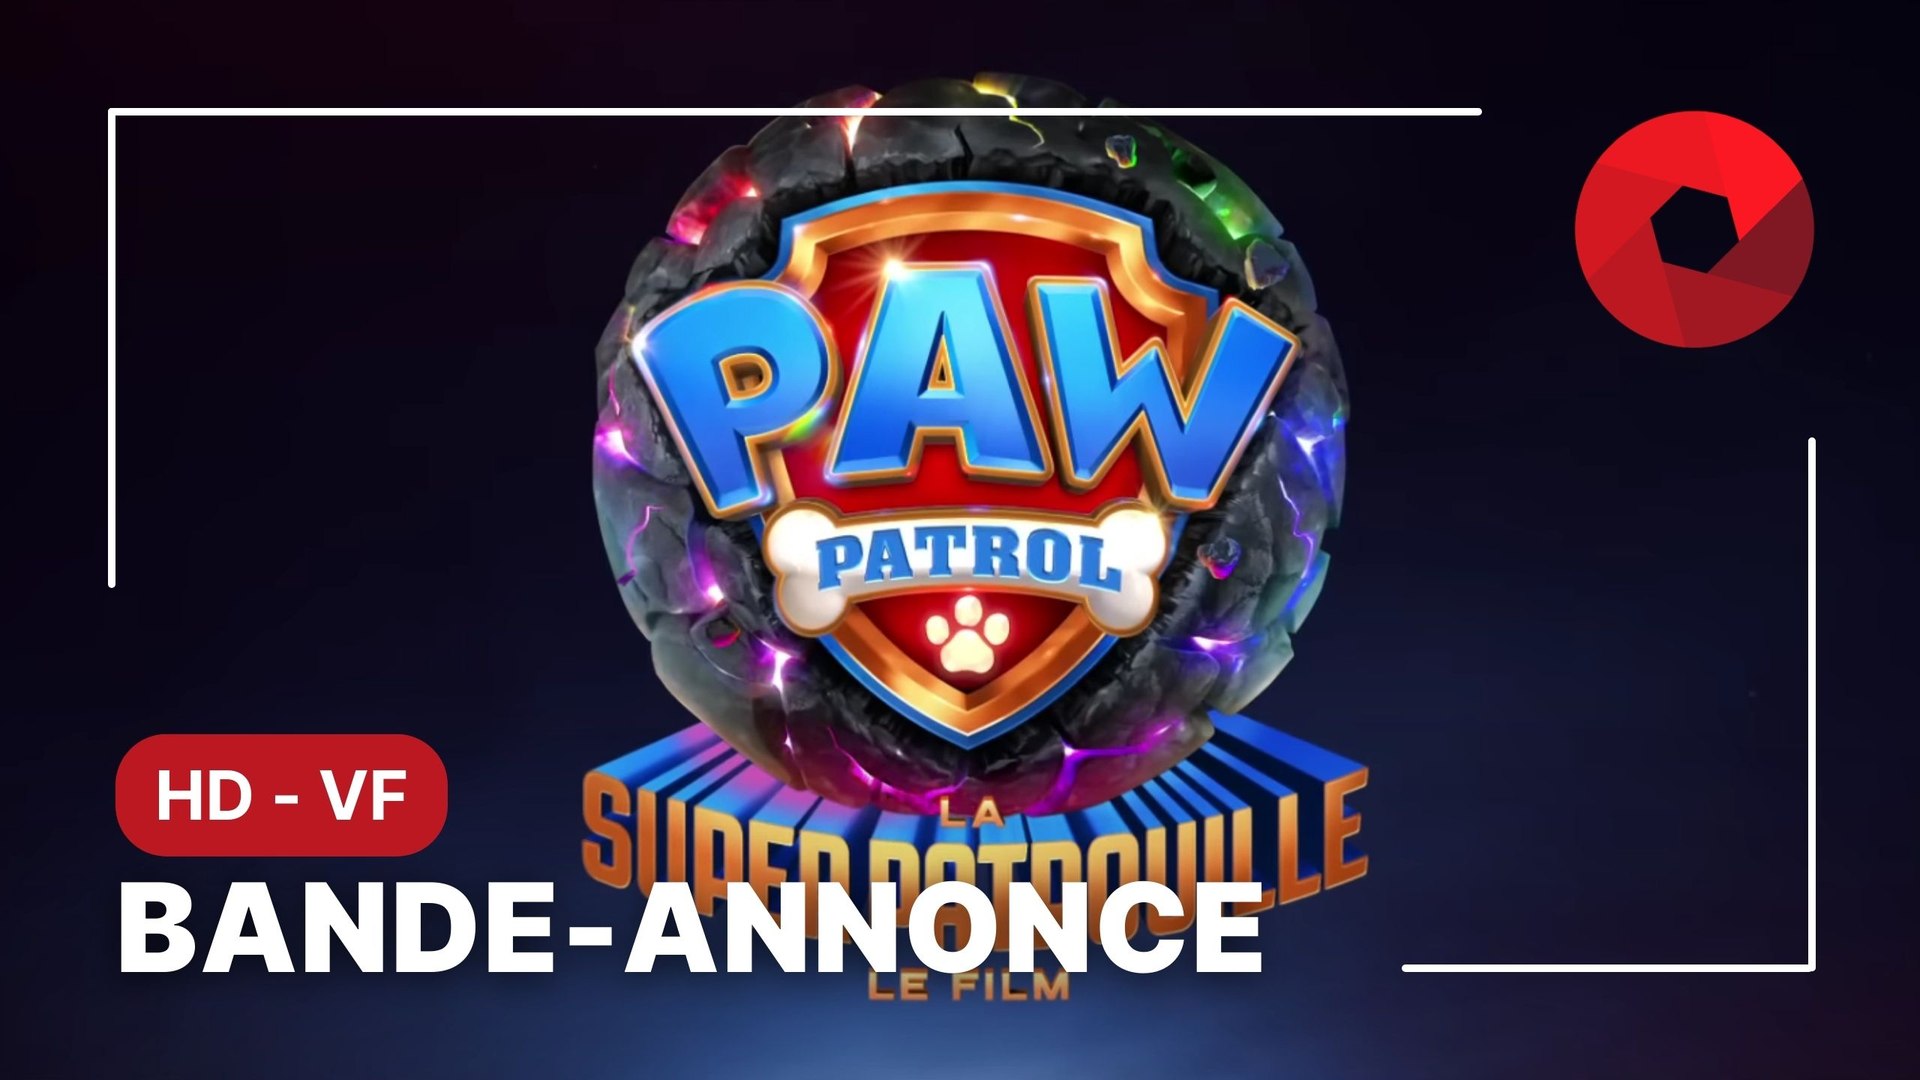 PAW PATROL : LA SUPER PATROUILLE - LE FILM - Paramount Pictures France